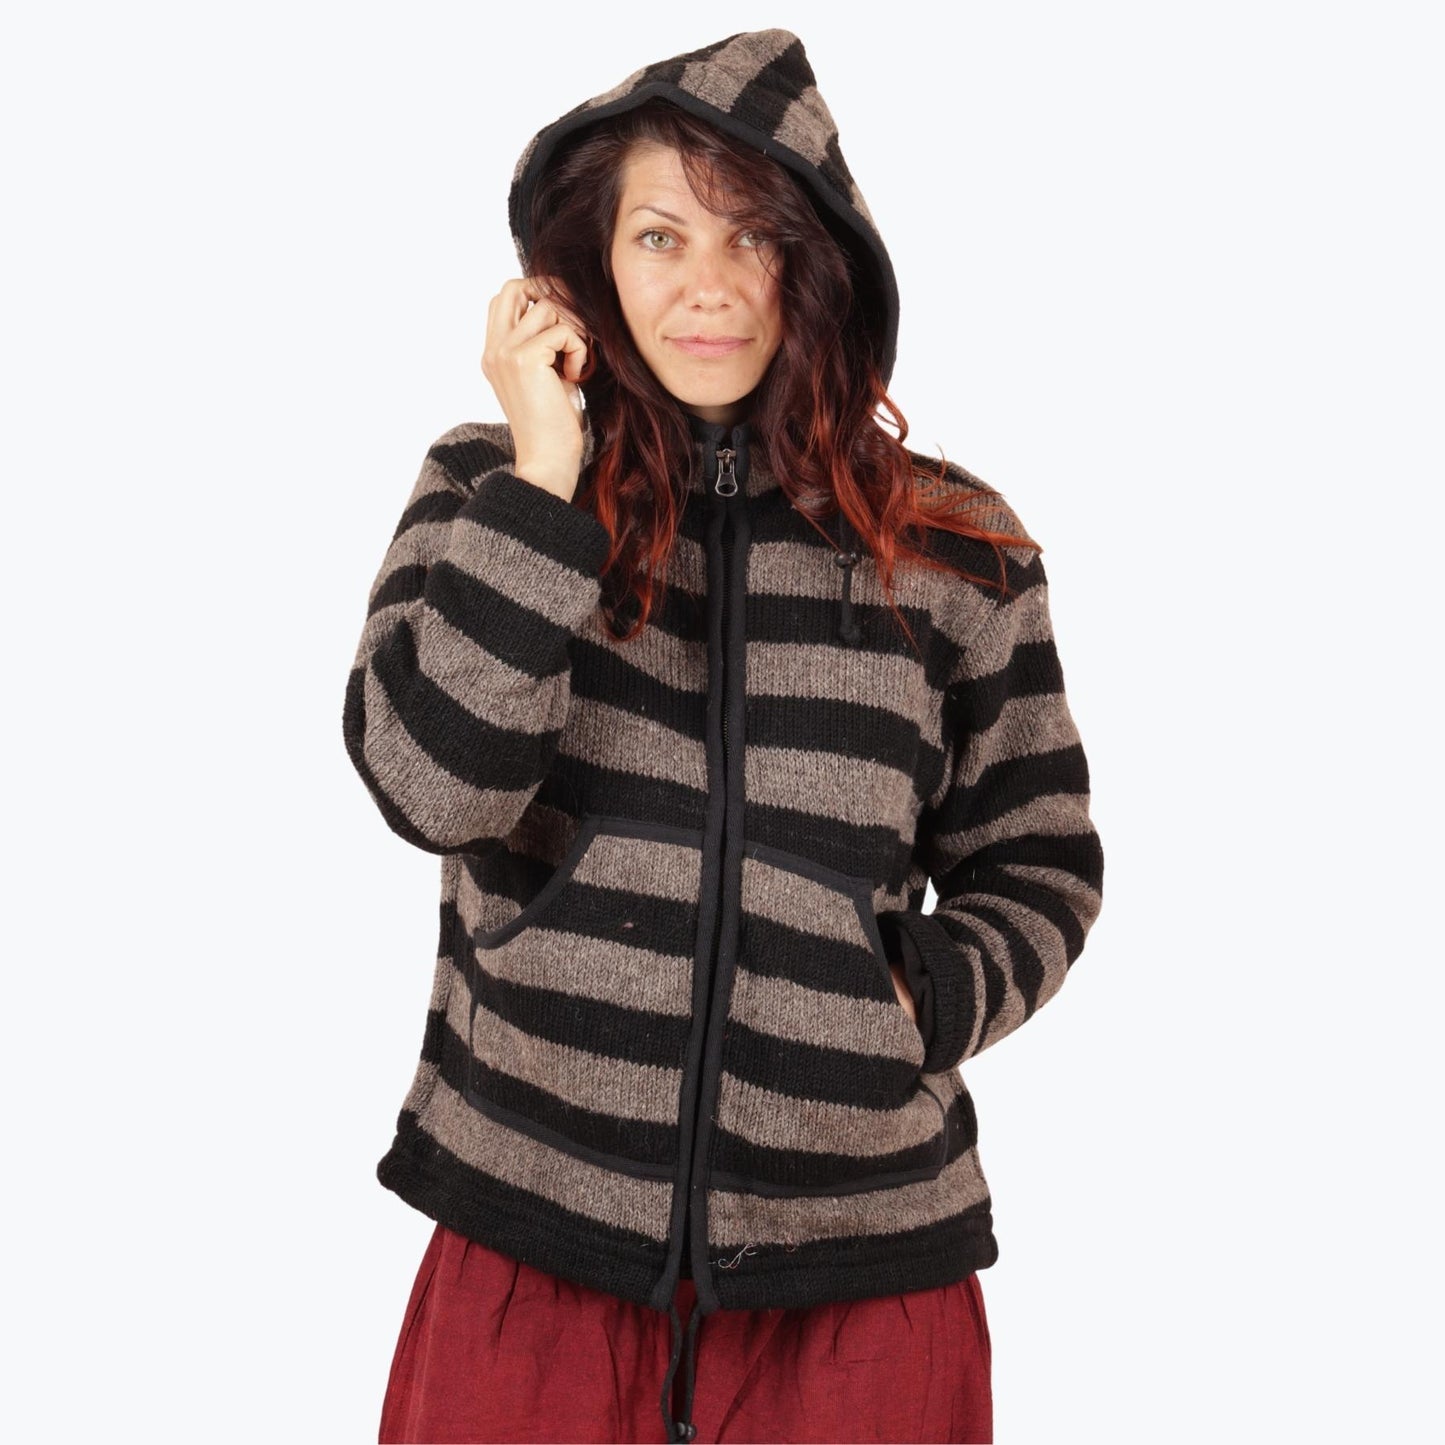 Wool jacket with hood - Brown black stripes